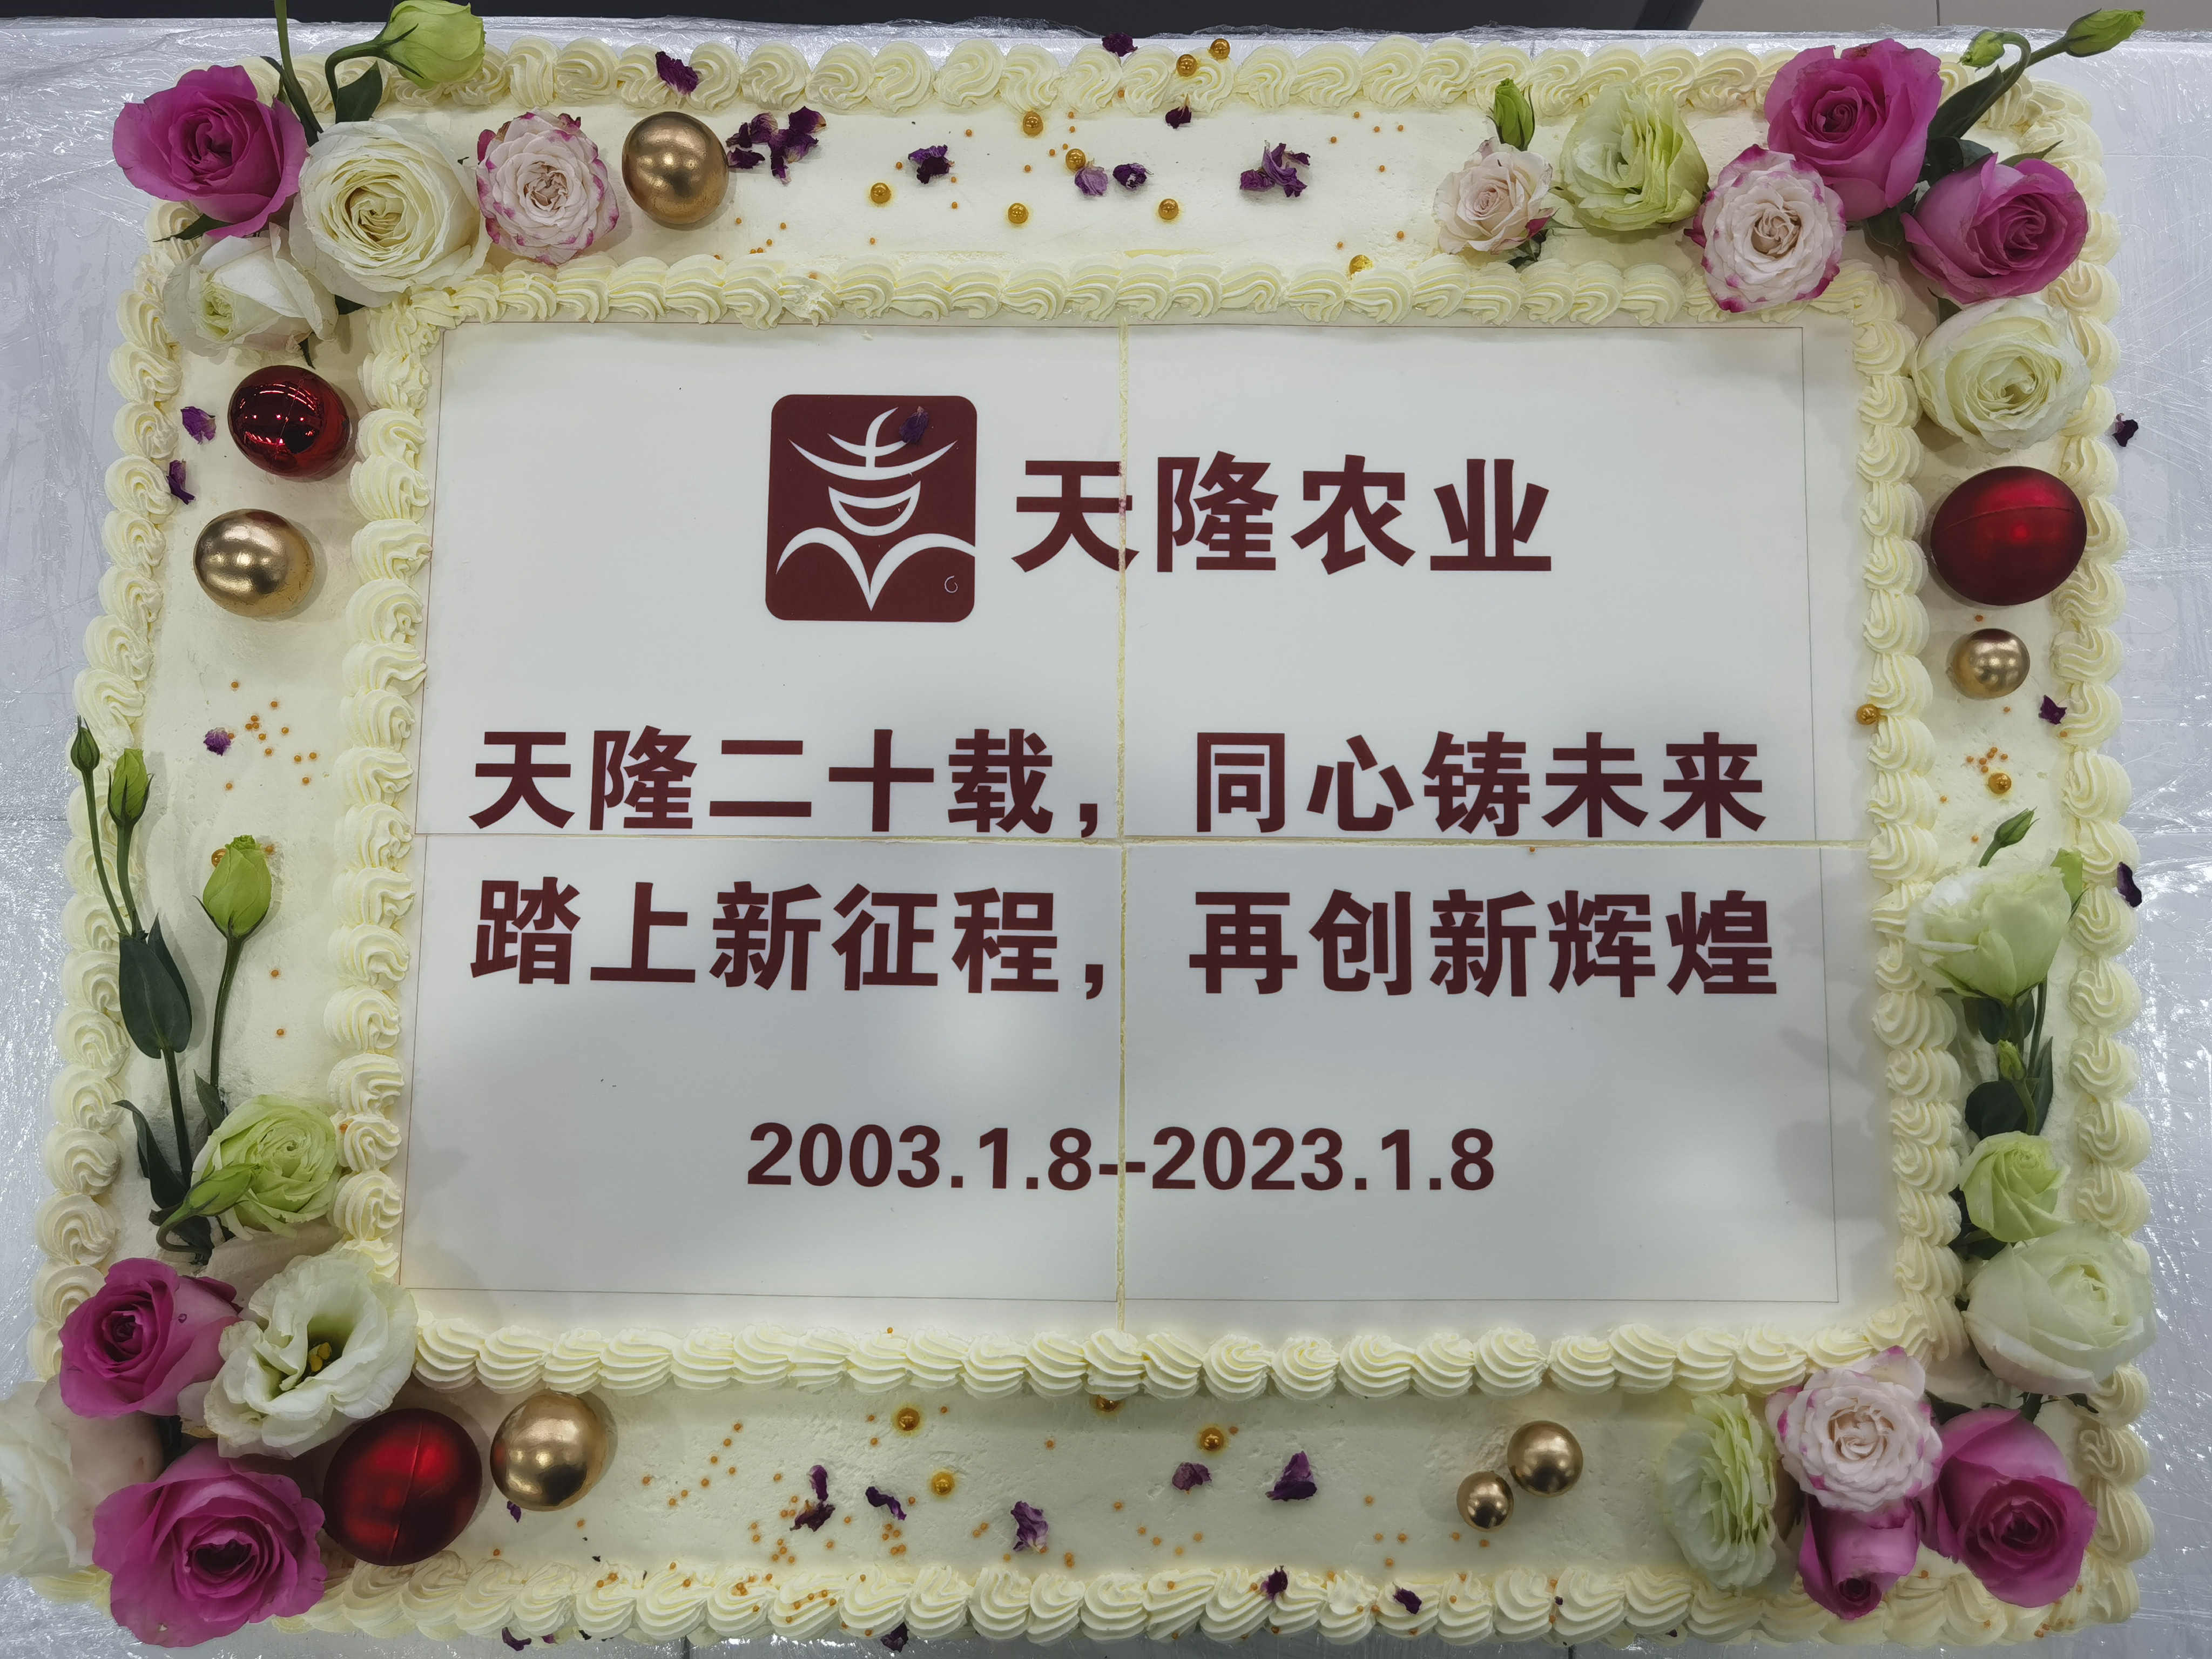 隆重庆贺乐虎游戏官网成立20周年